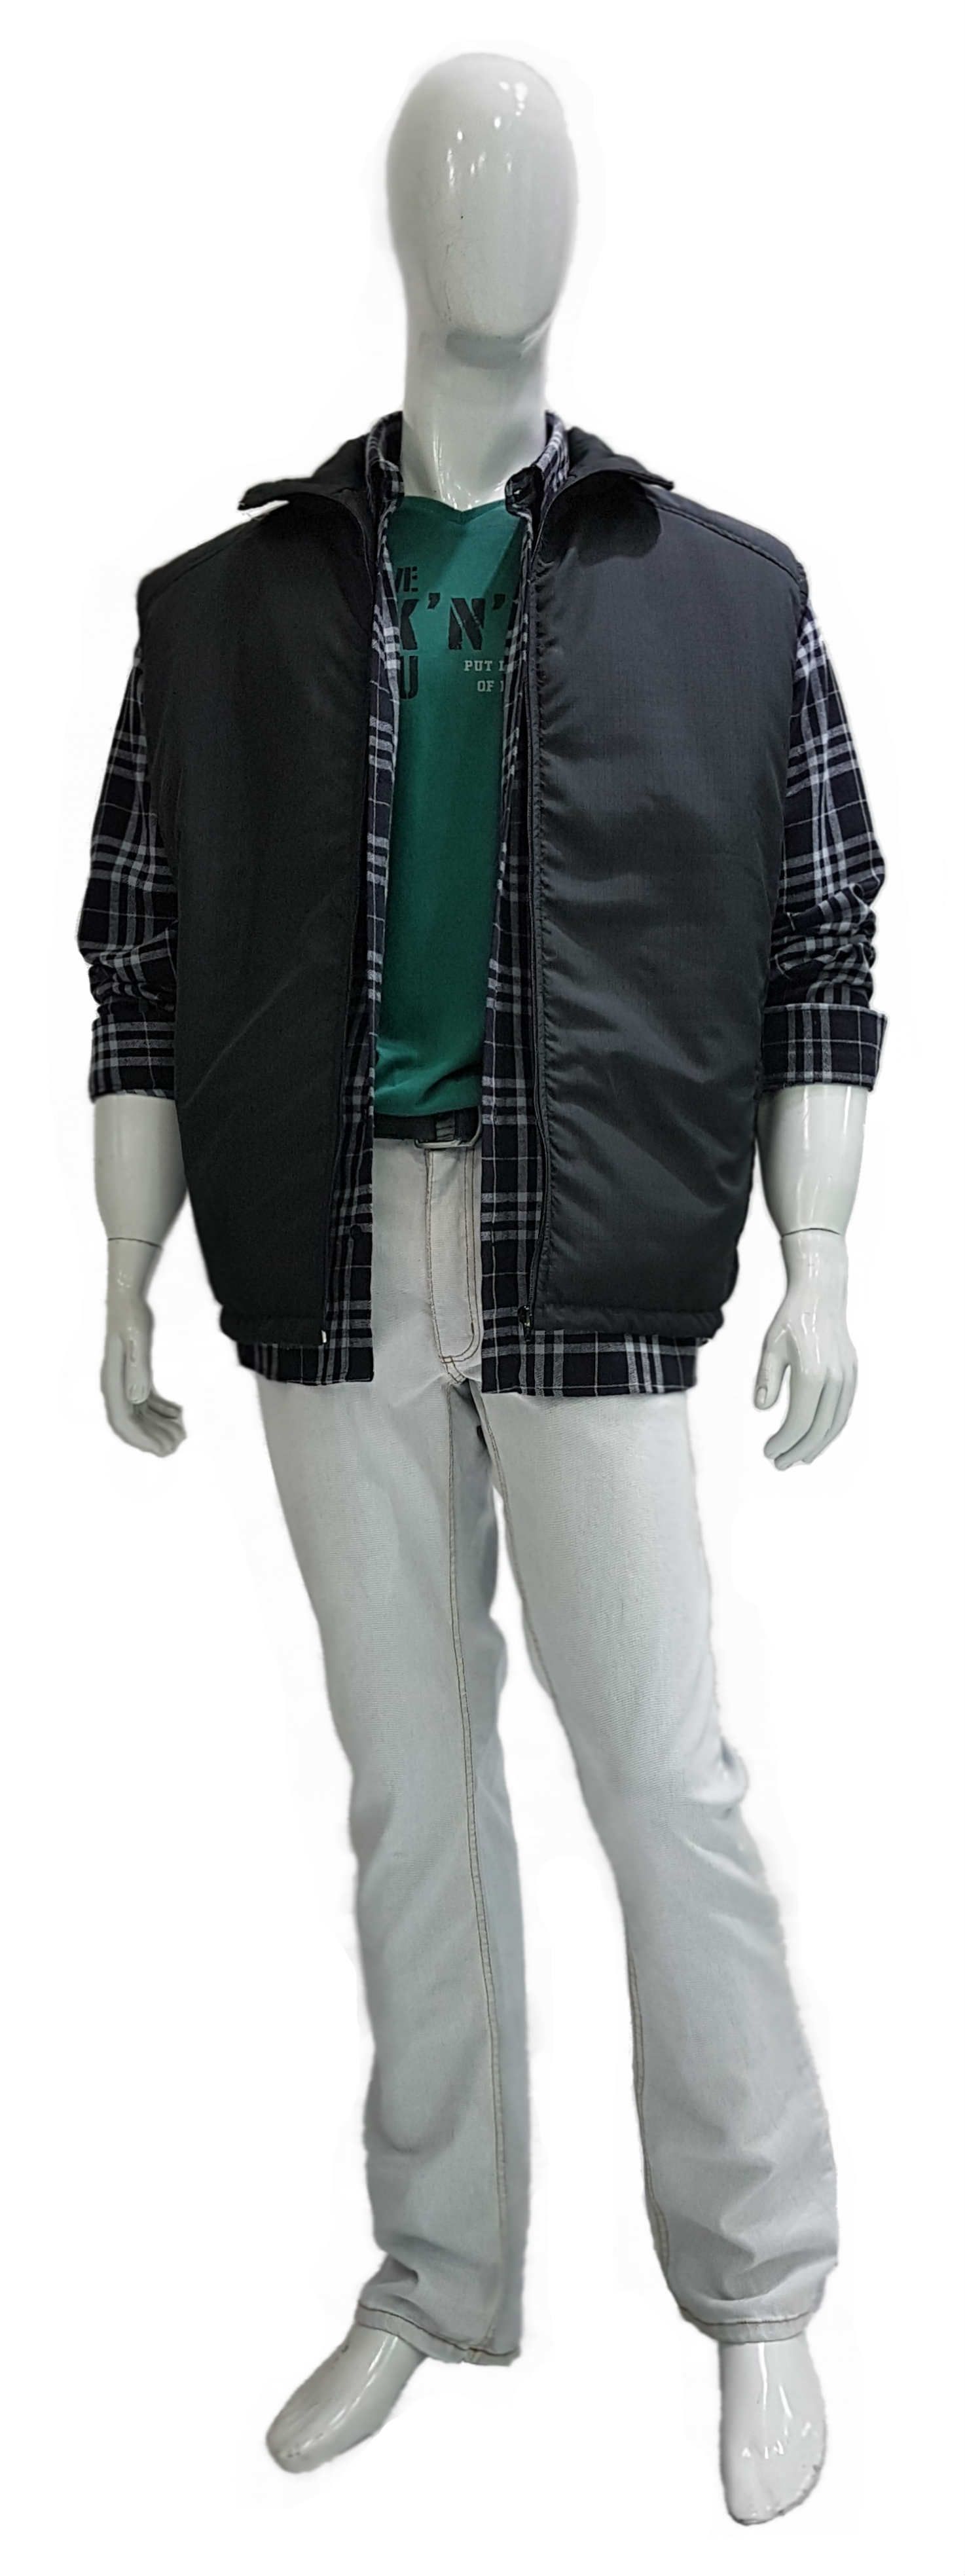 Camisa Plus Size de Flanela Ref 02779 / Colete Plus Size Ref 02802 / Calça Plus Size Jeans Ref 02962